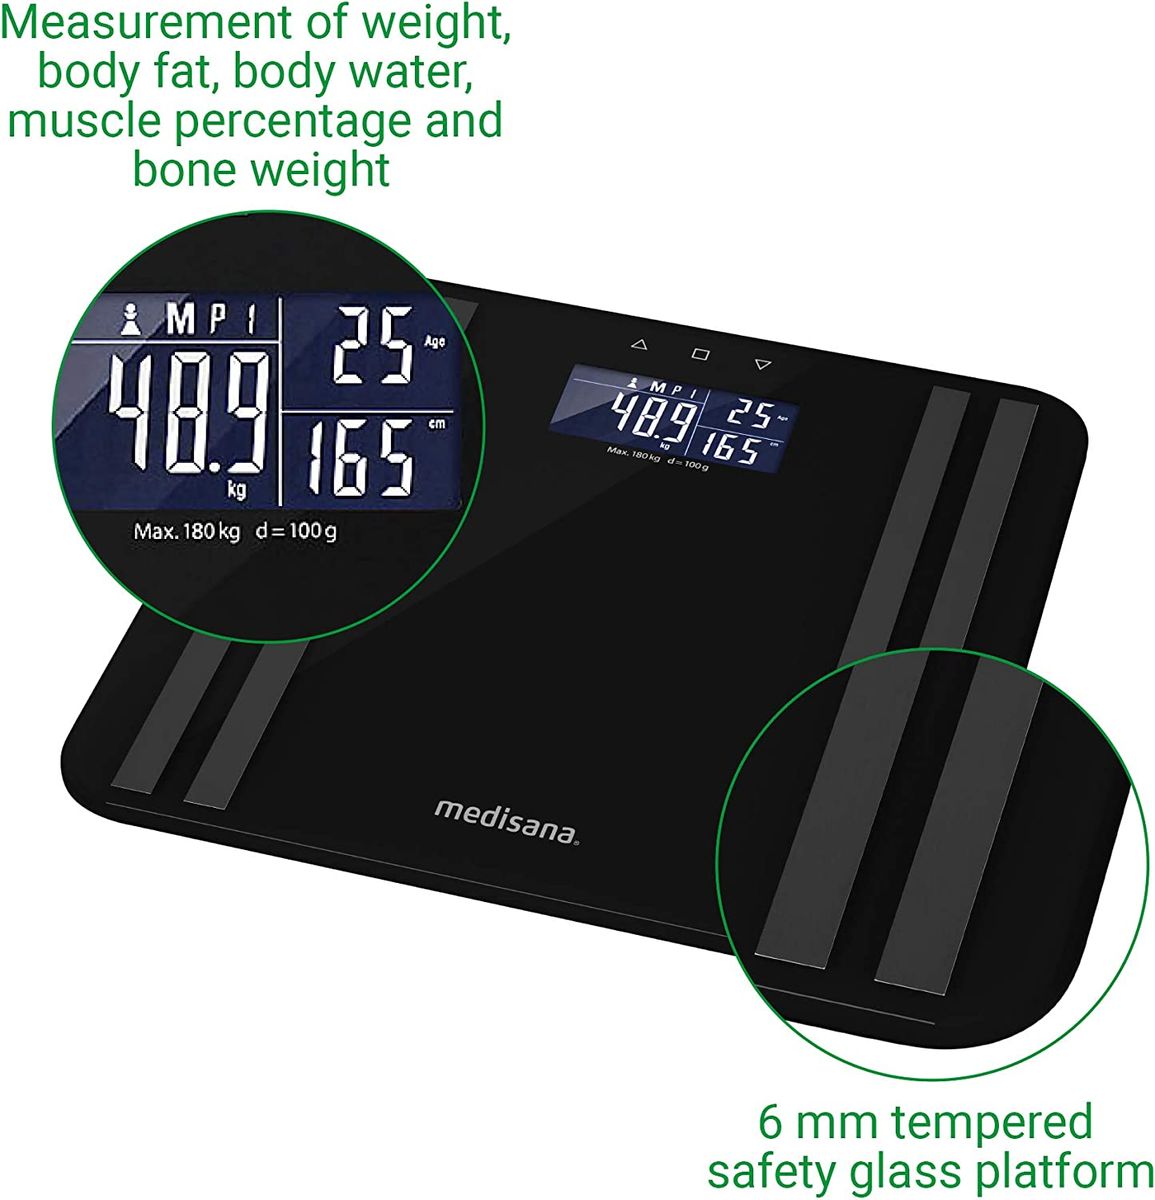 Medisana BS 465 Körperanalysewaage bis zu 180 kg, Personenwaage zur Messung von Körperfett, Körperwasser, Muskelmasse und Knochengewicht, Körperfettwaage Lichtindikator